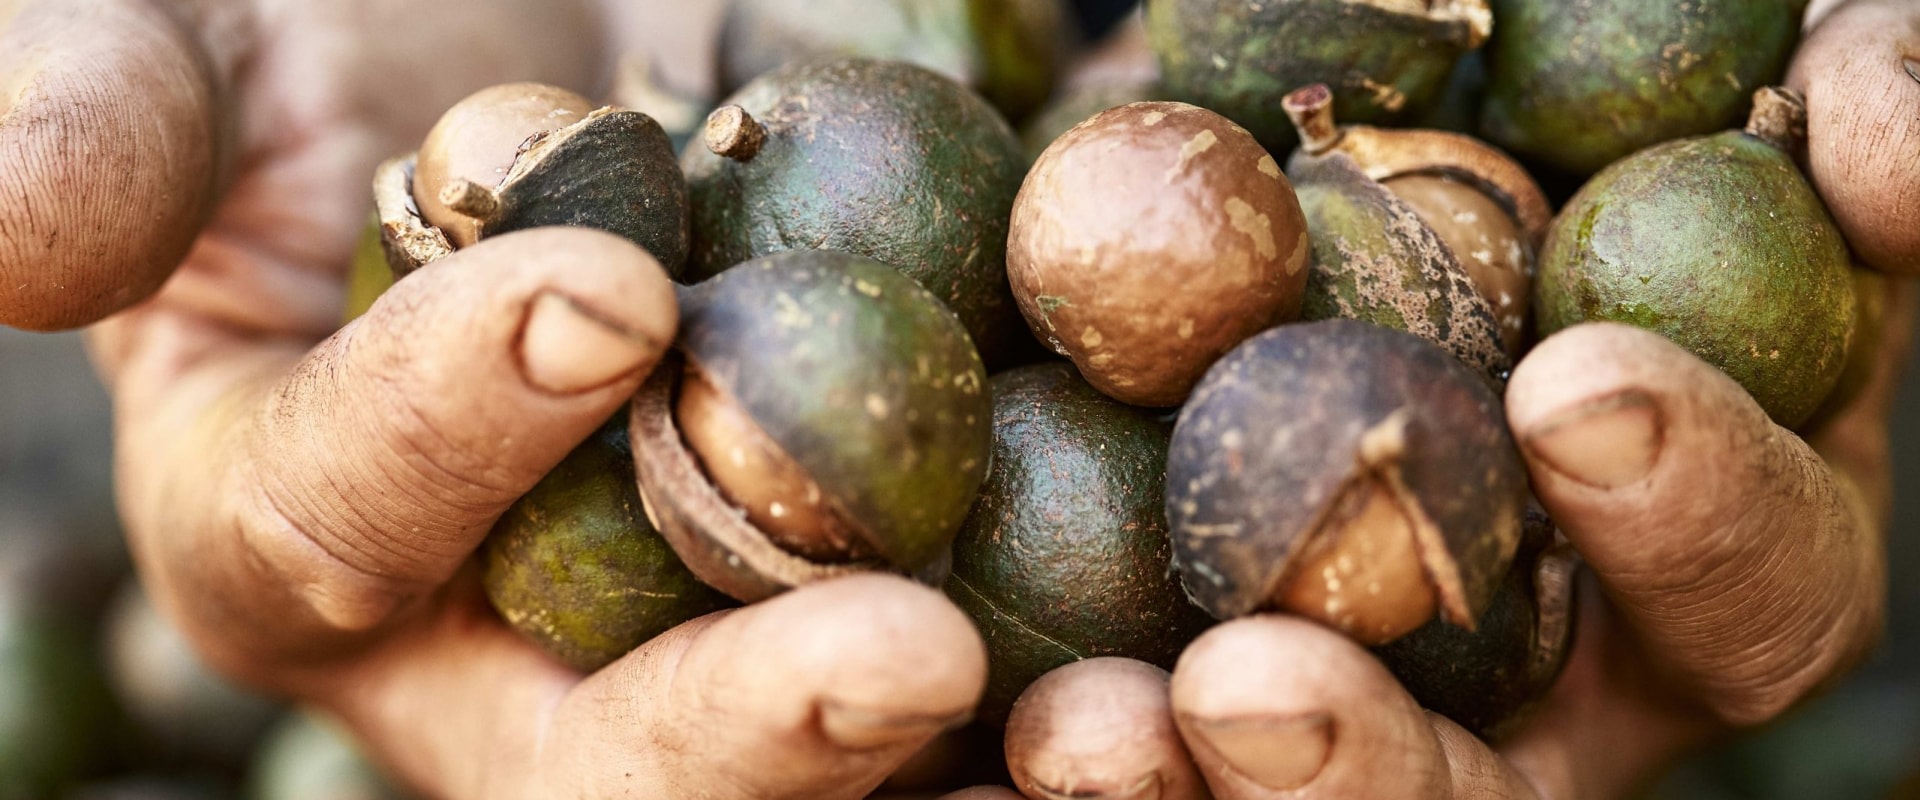 Is growing macadamia nuts profitable?